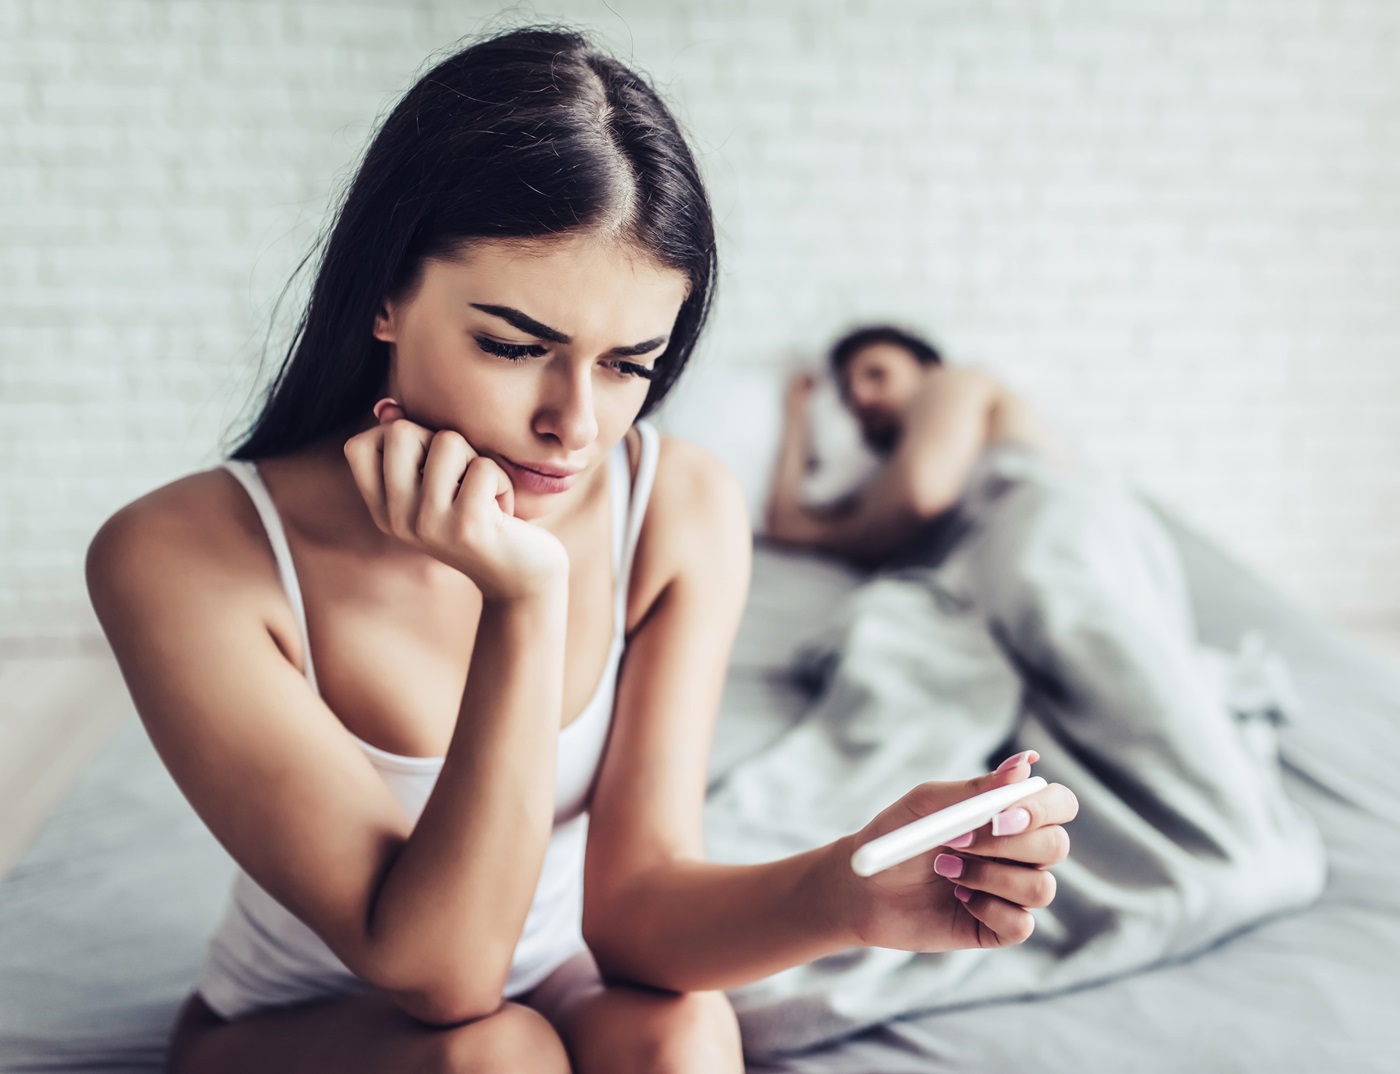 Desafios da fertilidade: como o stress afeta a vida sexual dos casais